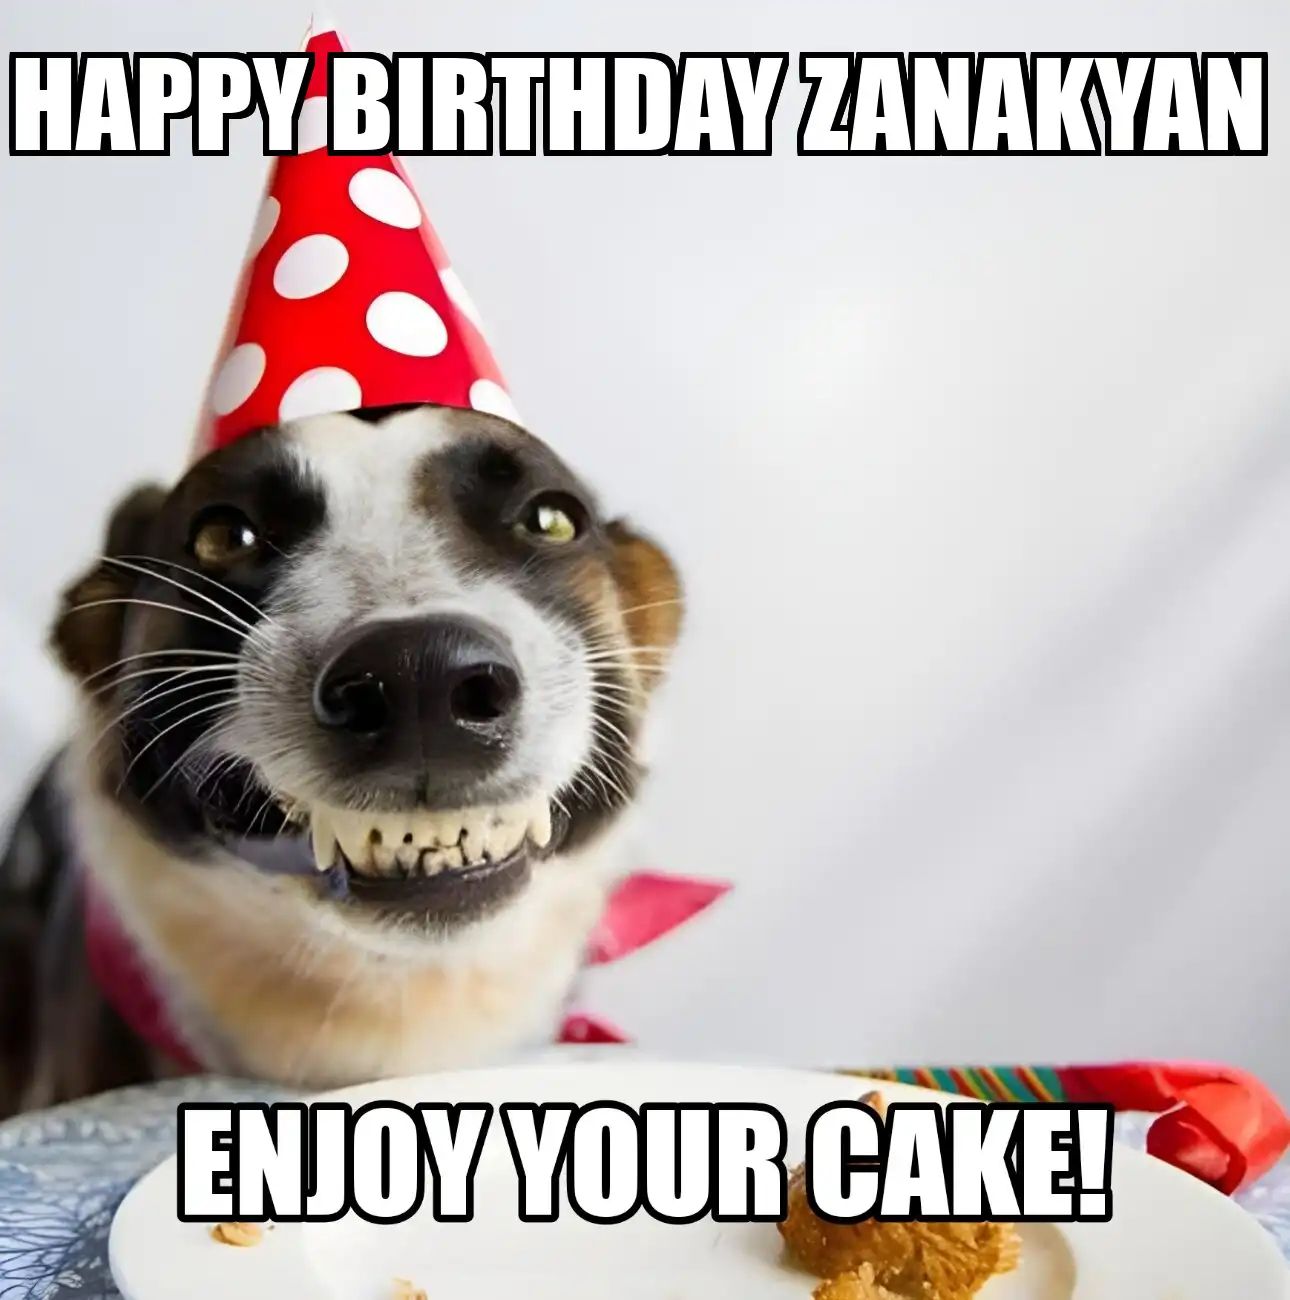 Happy Birthday Zanakyan Enjoy Your Cake Dog Meme